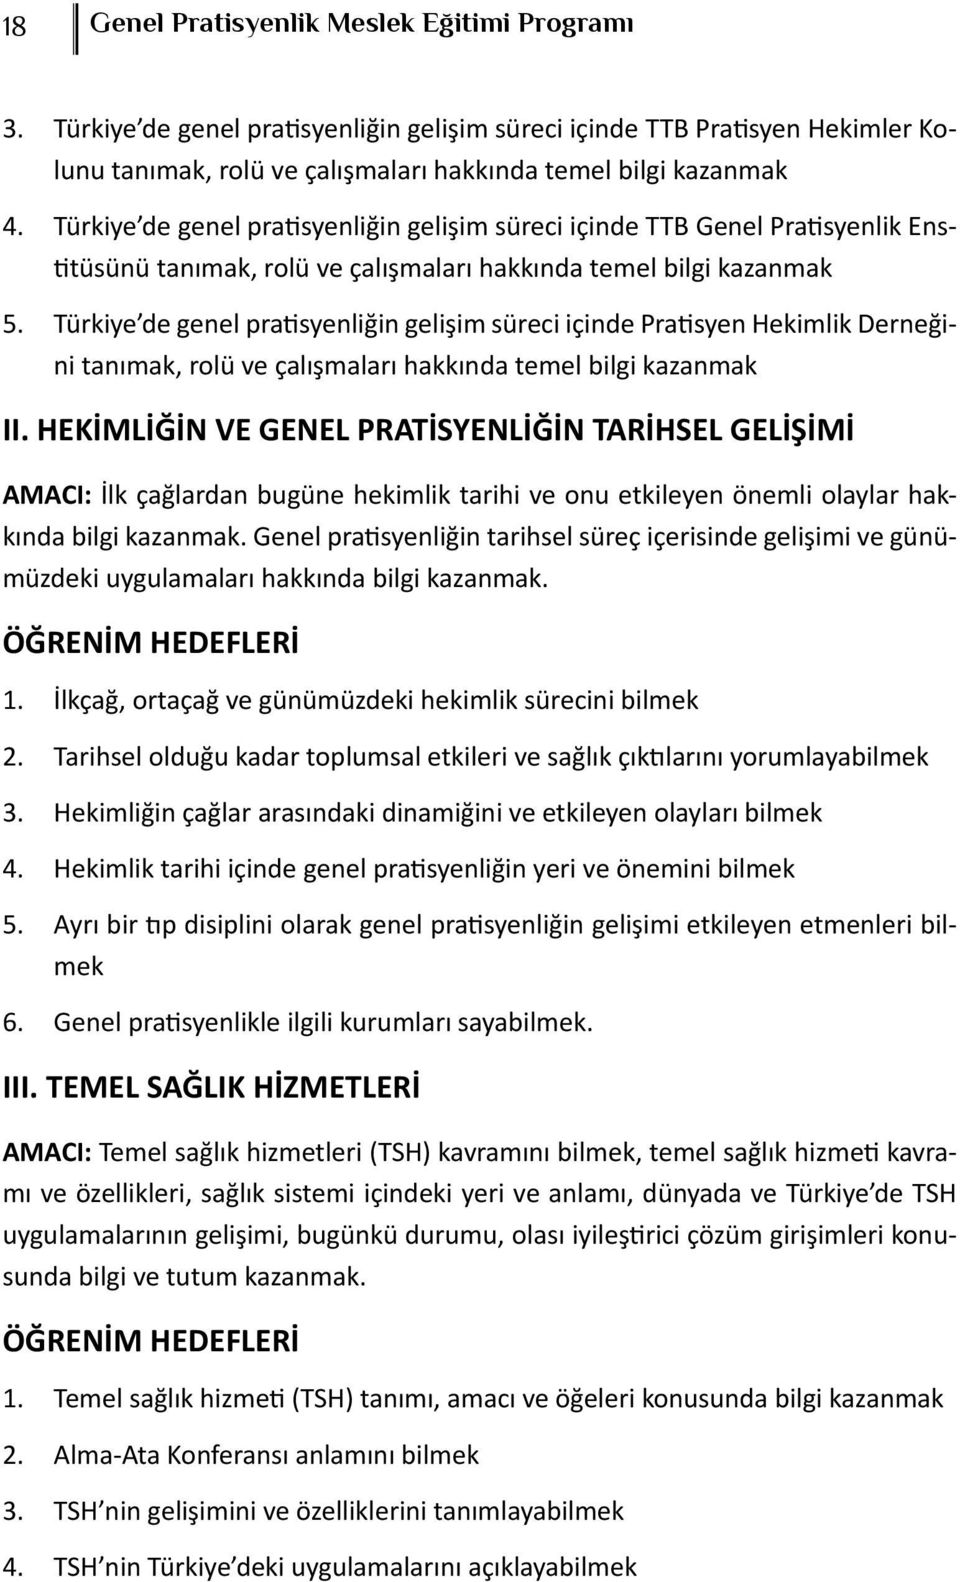 Türkiye de genel pratisyenliğin gelişim süreci içinde Pratisyen Hekimlik Derneğini tanımak, rolü ve çalışmaları hakkında temel bilgi kazanmak II.